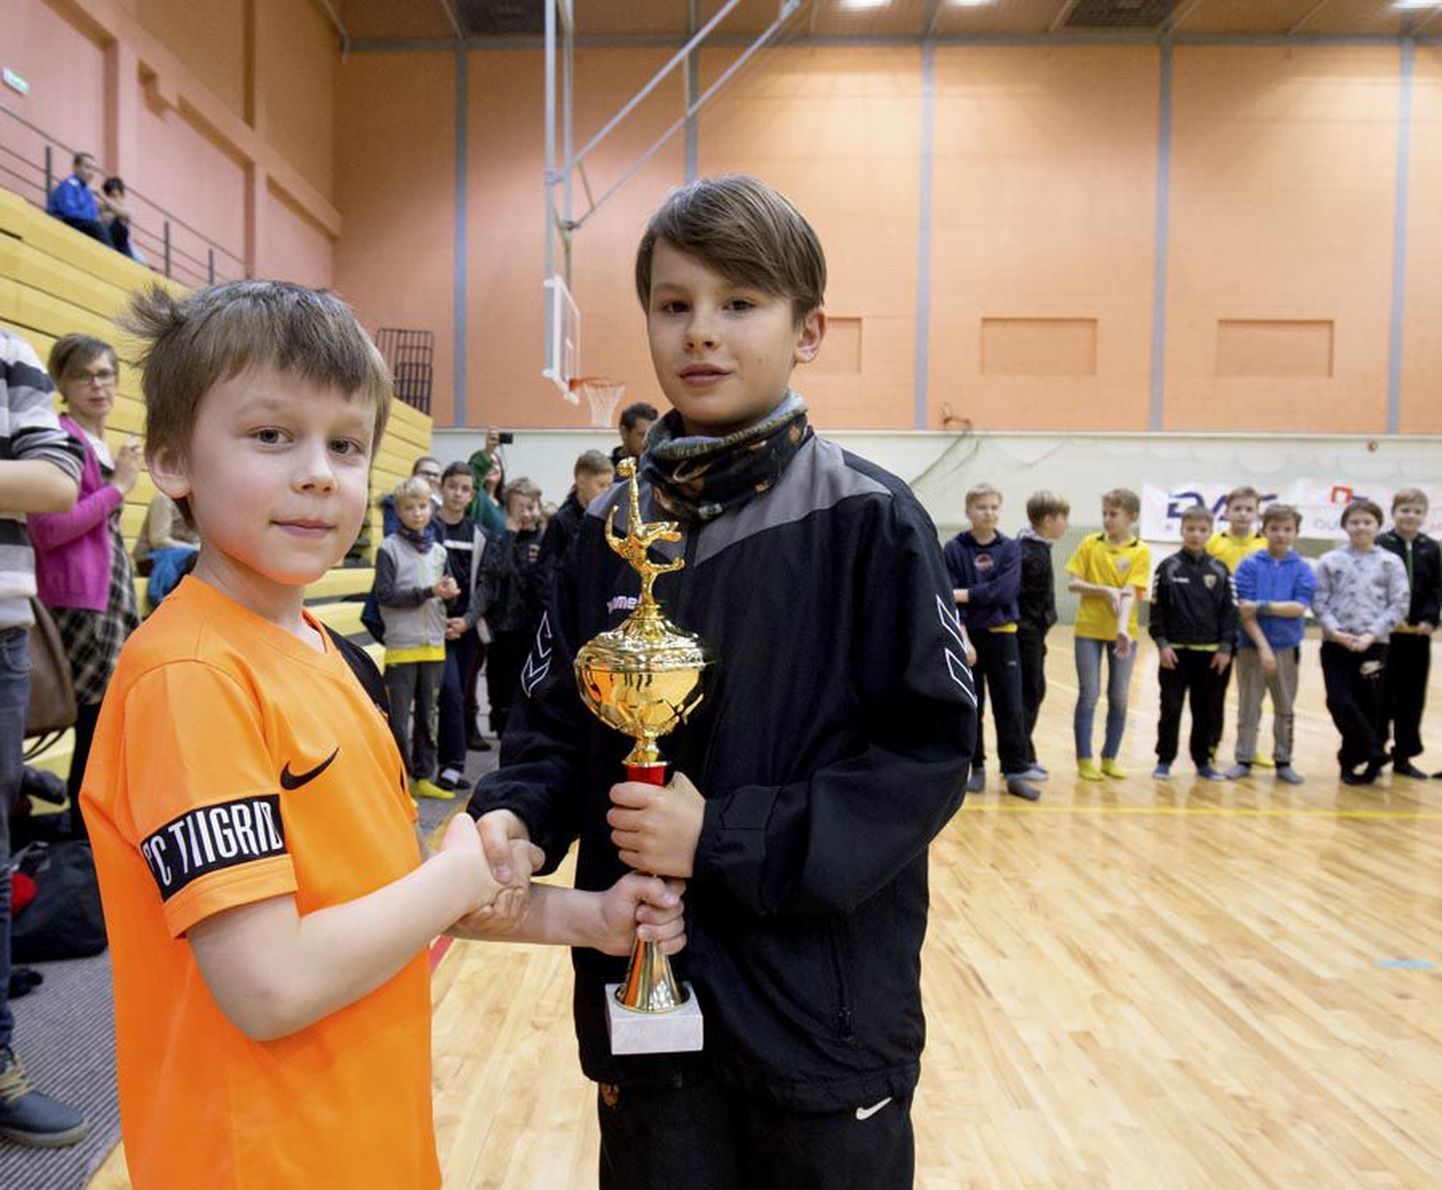 Harri Kardi mälestusvõistlusena peetud turniiri paremaid 12-aastasi jalgpallipoisse õnnitles neist poole noorem poiss, Harri Kardi pojapojapoeg, kes kannab vanavanaisaga sama nime.